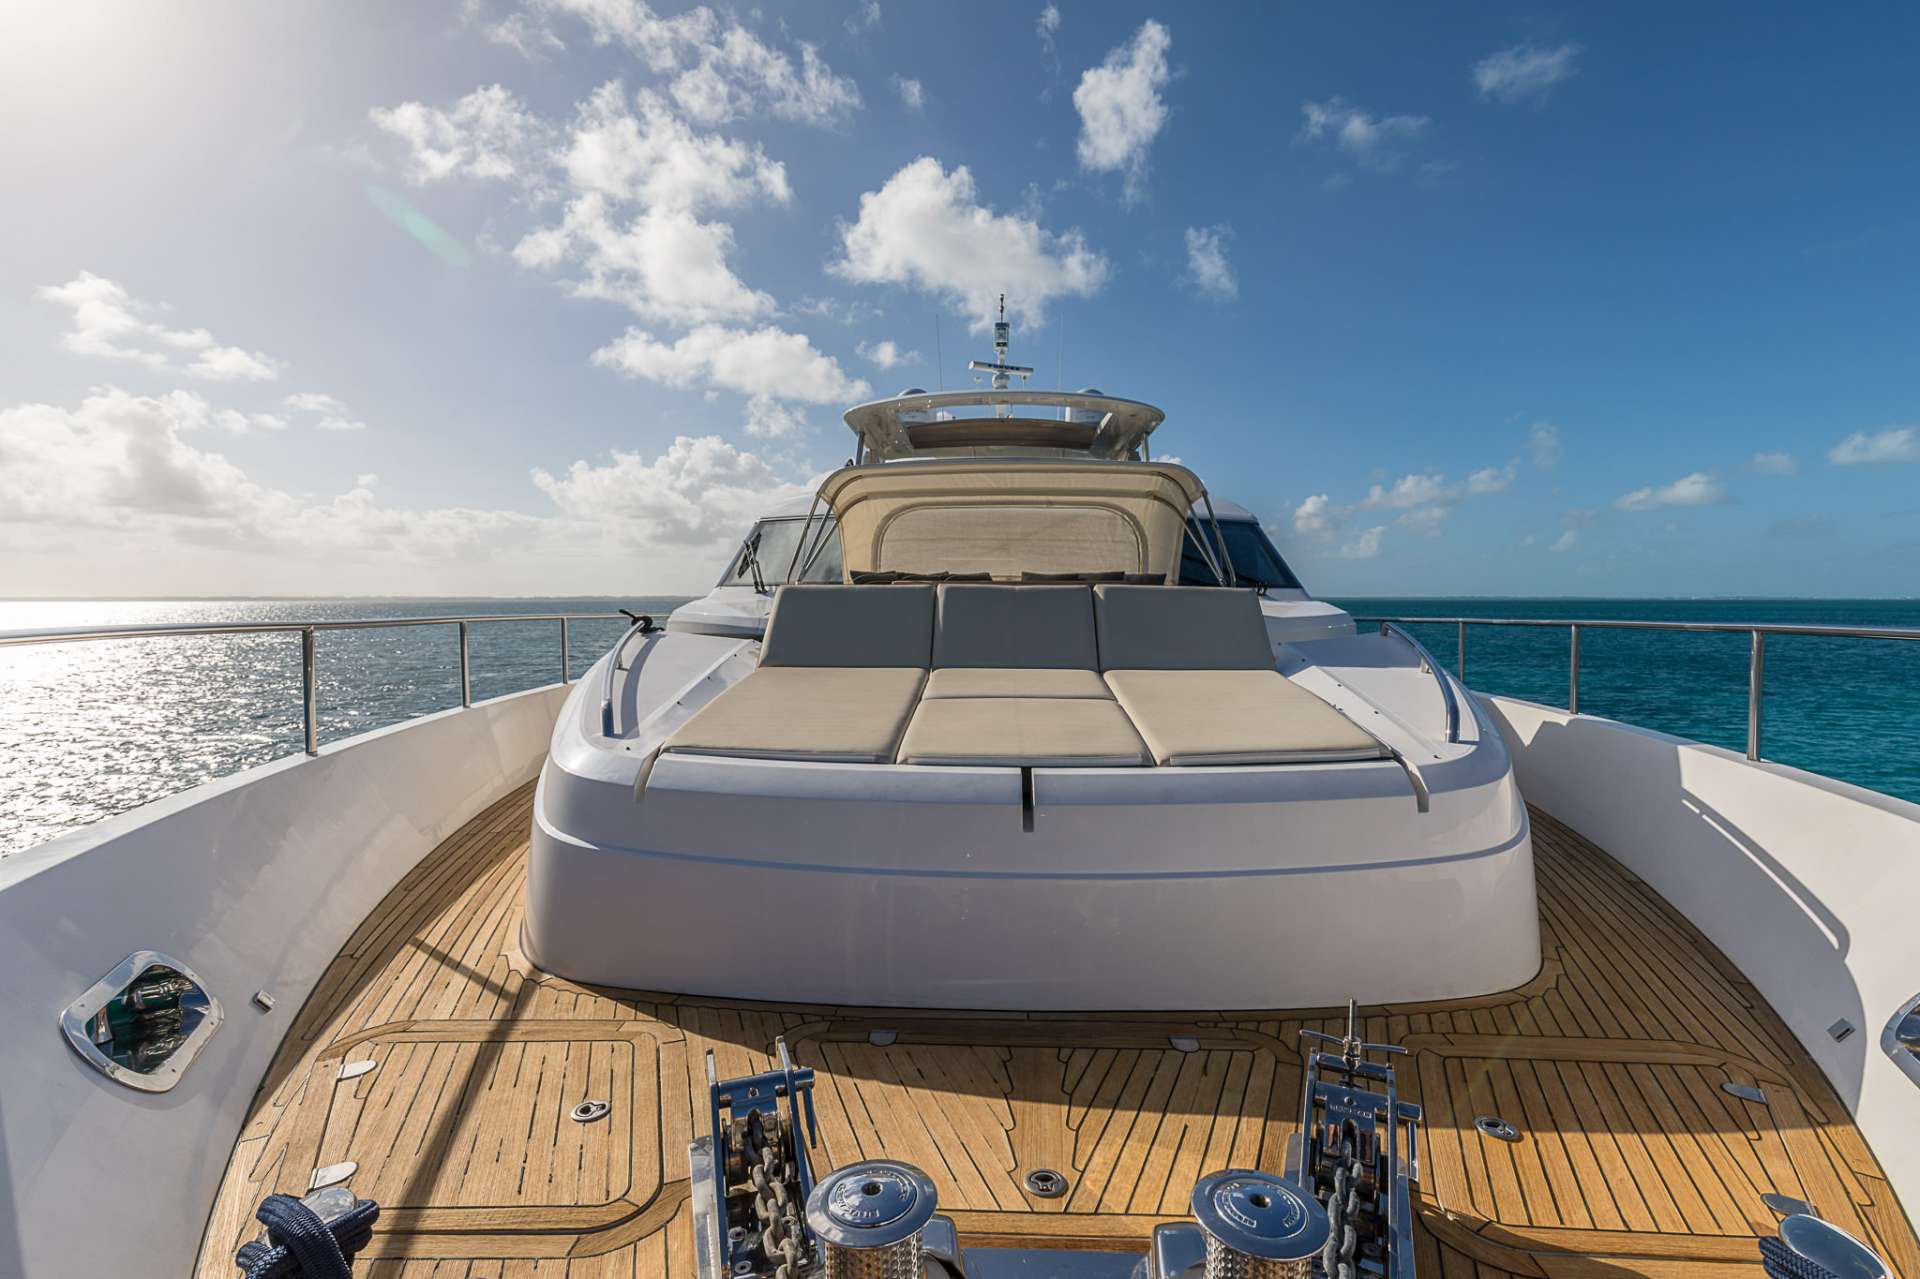 Motor Yacht 'LADY COPE' Forward Sunpad, 8 PAX, 4 Crew, 98.00 Ft, 29.00 Meters, Built 2012, Princess, UK, Refit Year 2016